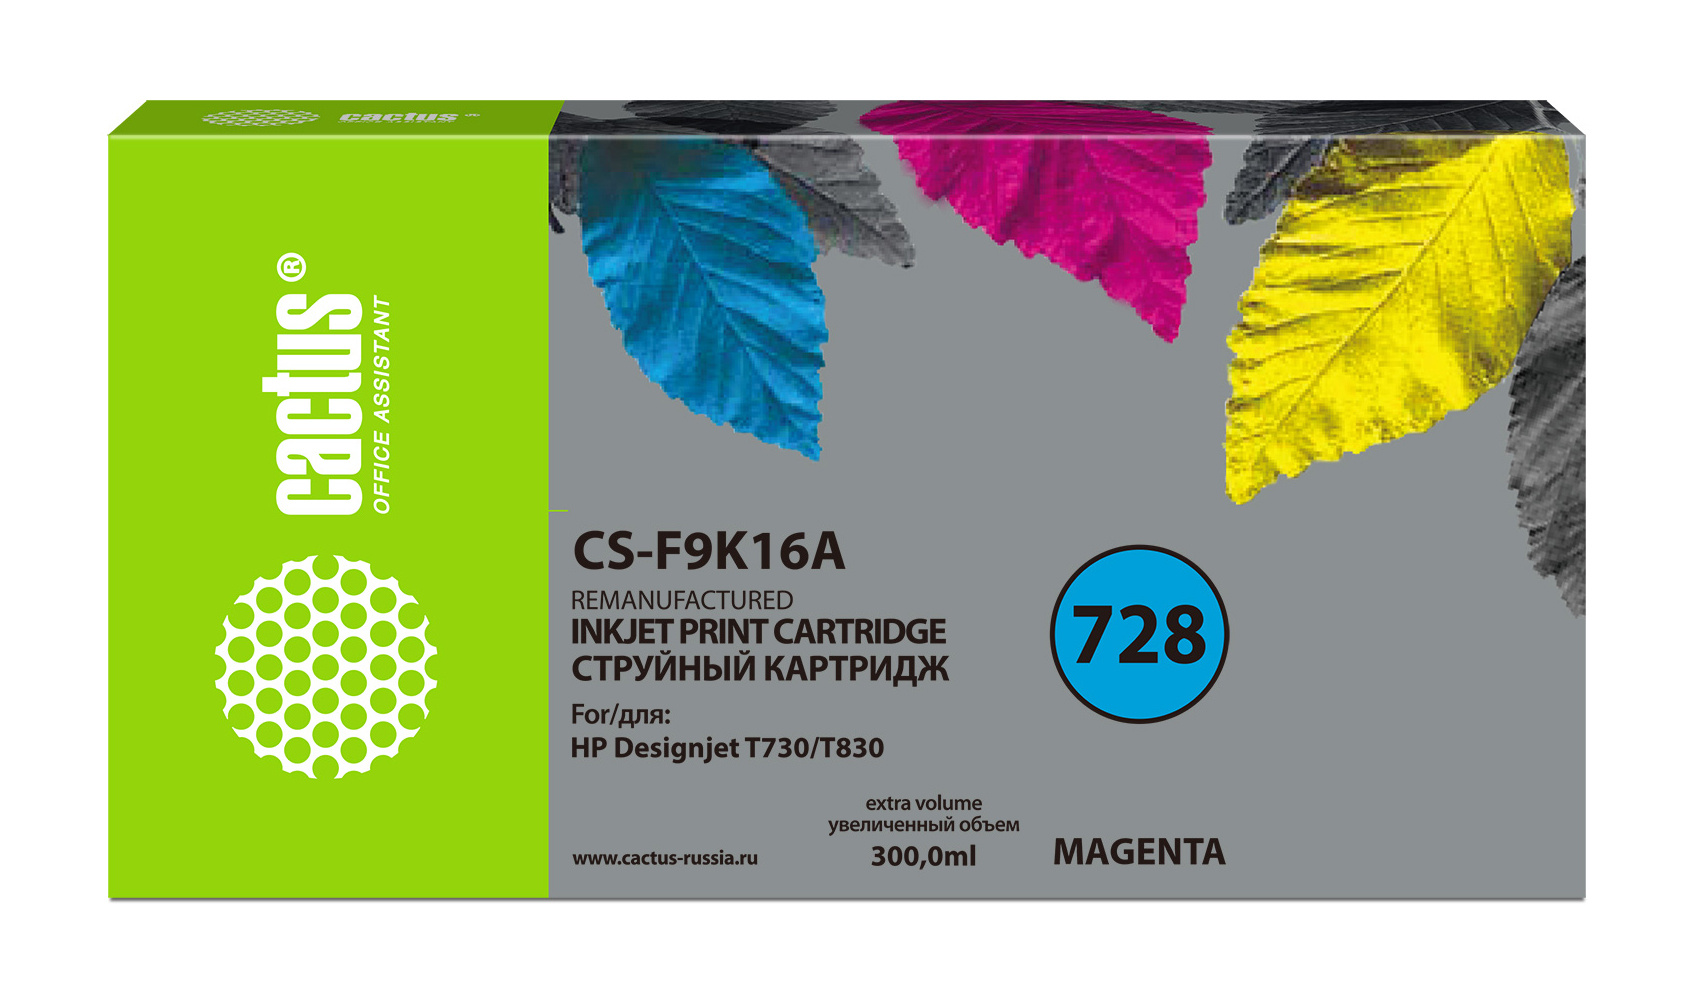 Картридж струйный Cactus CS-F9K16A 728XXL пурпурный (300мл) для HP DesignJet T730, T830 картридж струйный cactus cs f9k16a 728xxl для hp designjet t730 t830 300 мл цвет пурпурный